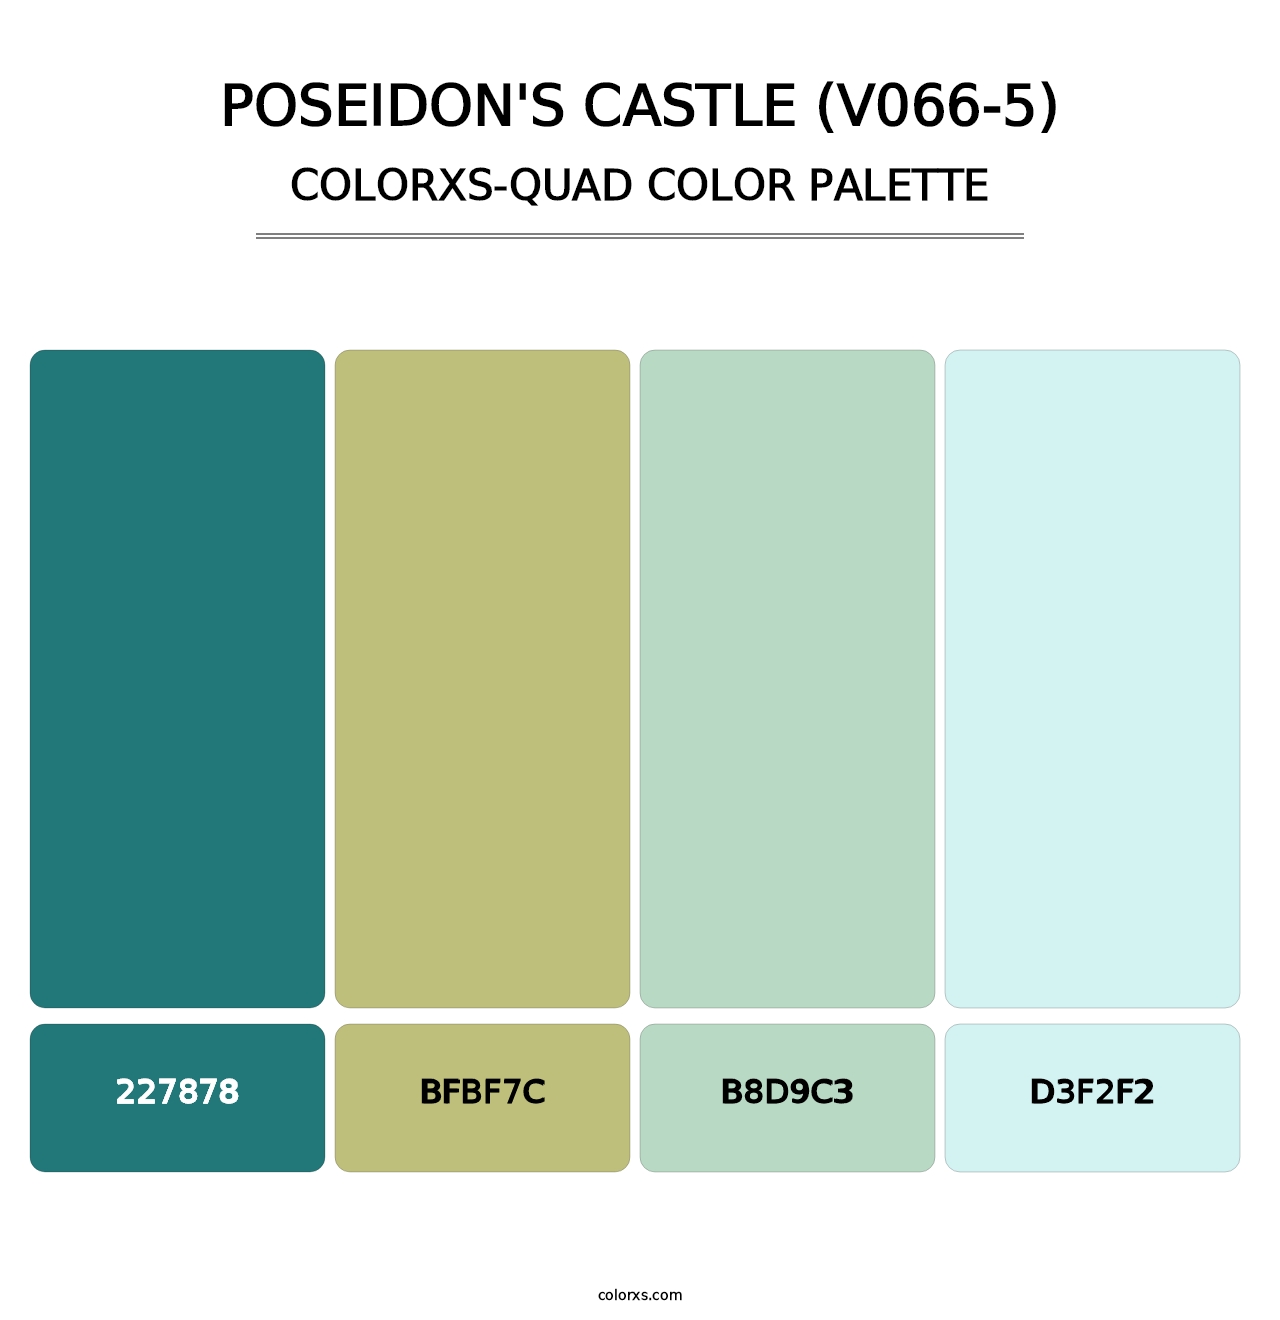 Poseidon's Castle (V066-5) - Colorxs Quad Palette